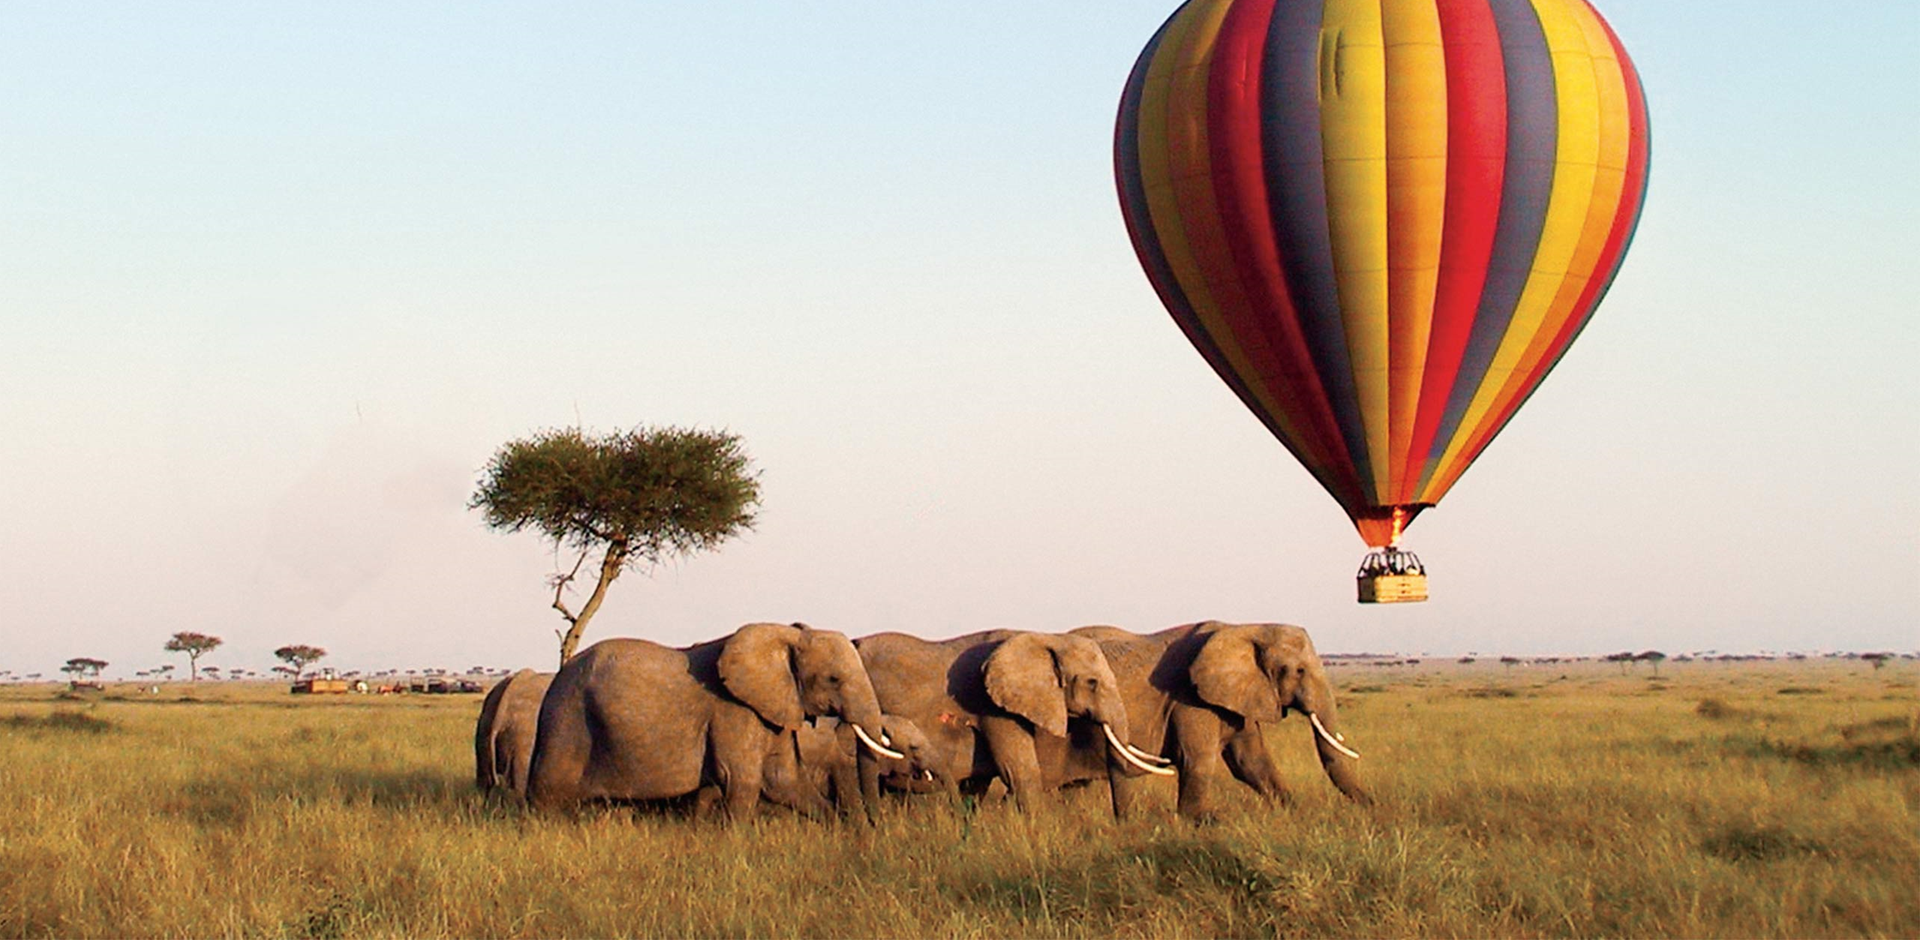 Balloon ride over elephants